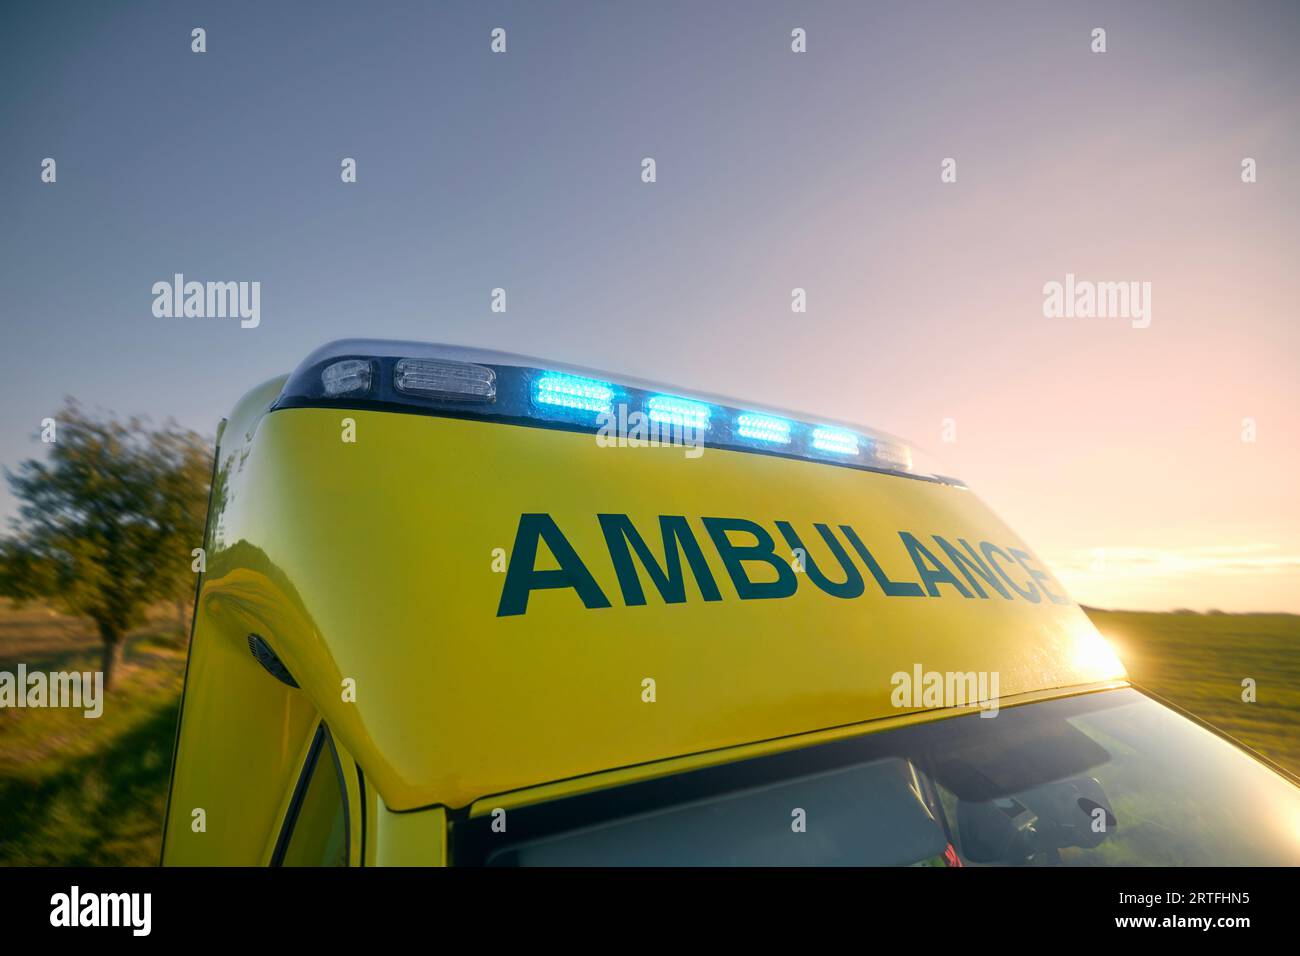 Sirene des Rettungsdienstes gegen den Himmel bei Sonnenuntergang. Blinker auf dem Dach des Ambulanzwagens. Themen Rettung, Dringlichkeit und Gesundheitsfürsorge. Stockfoto